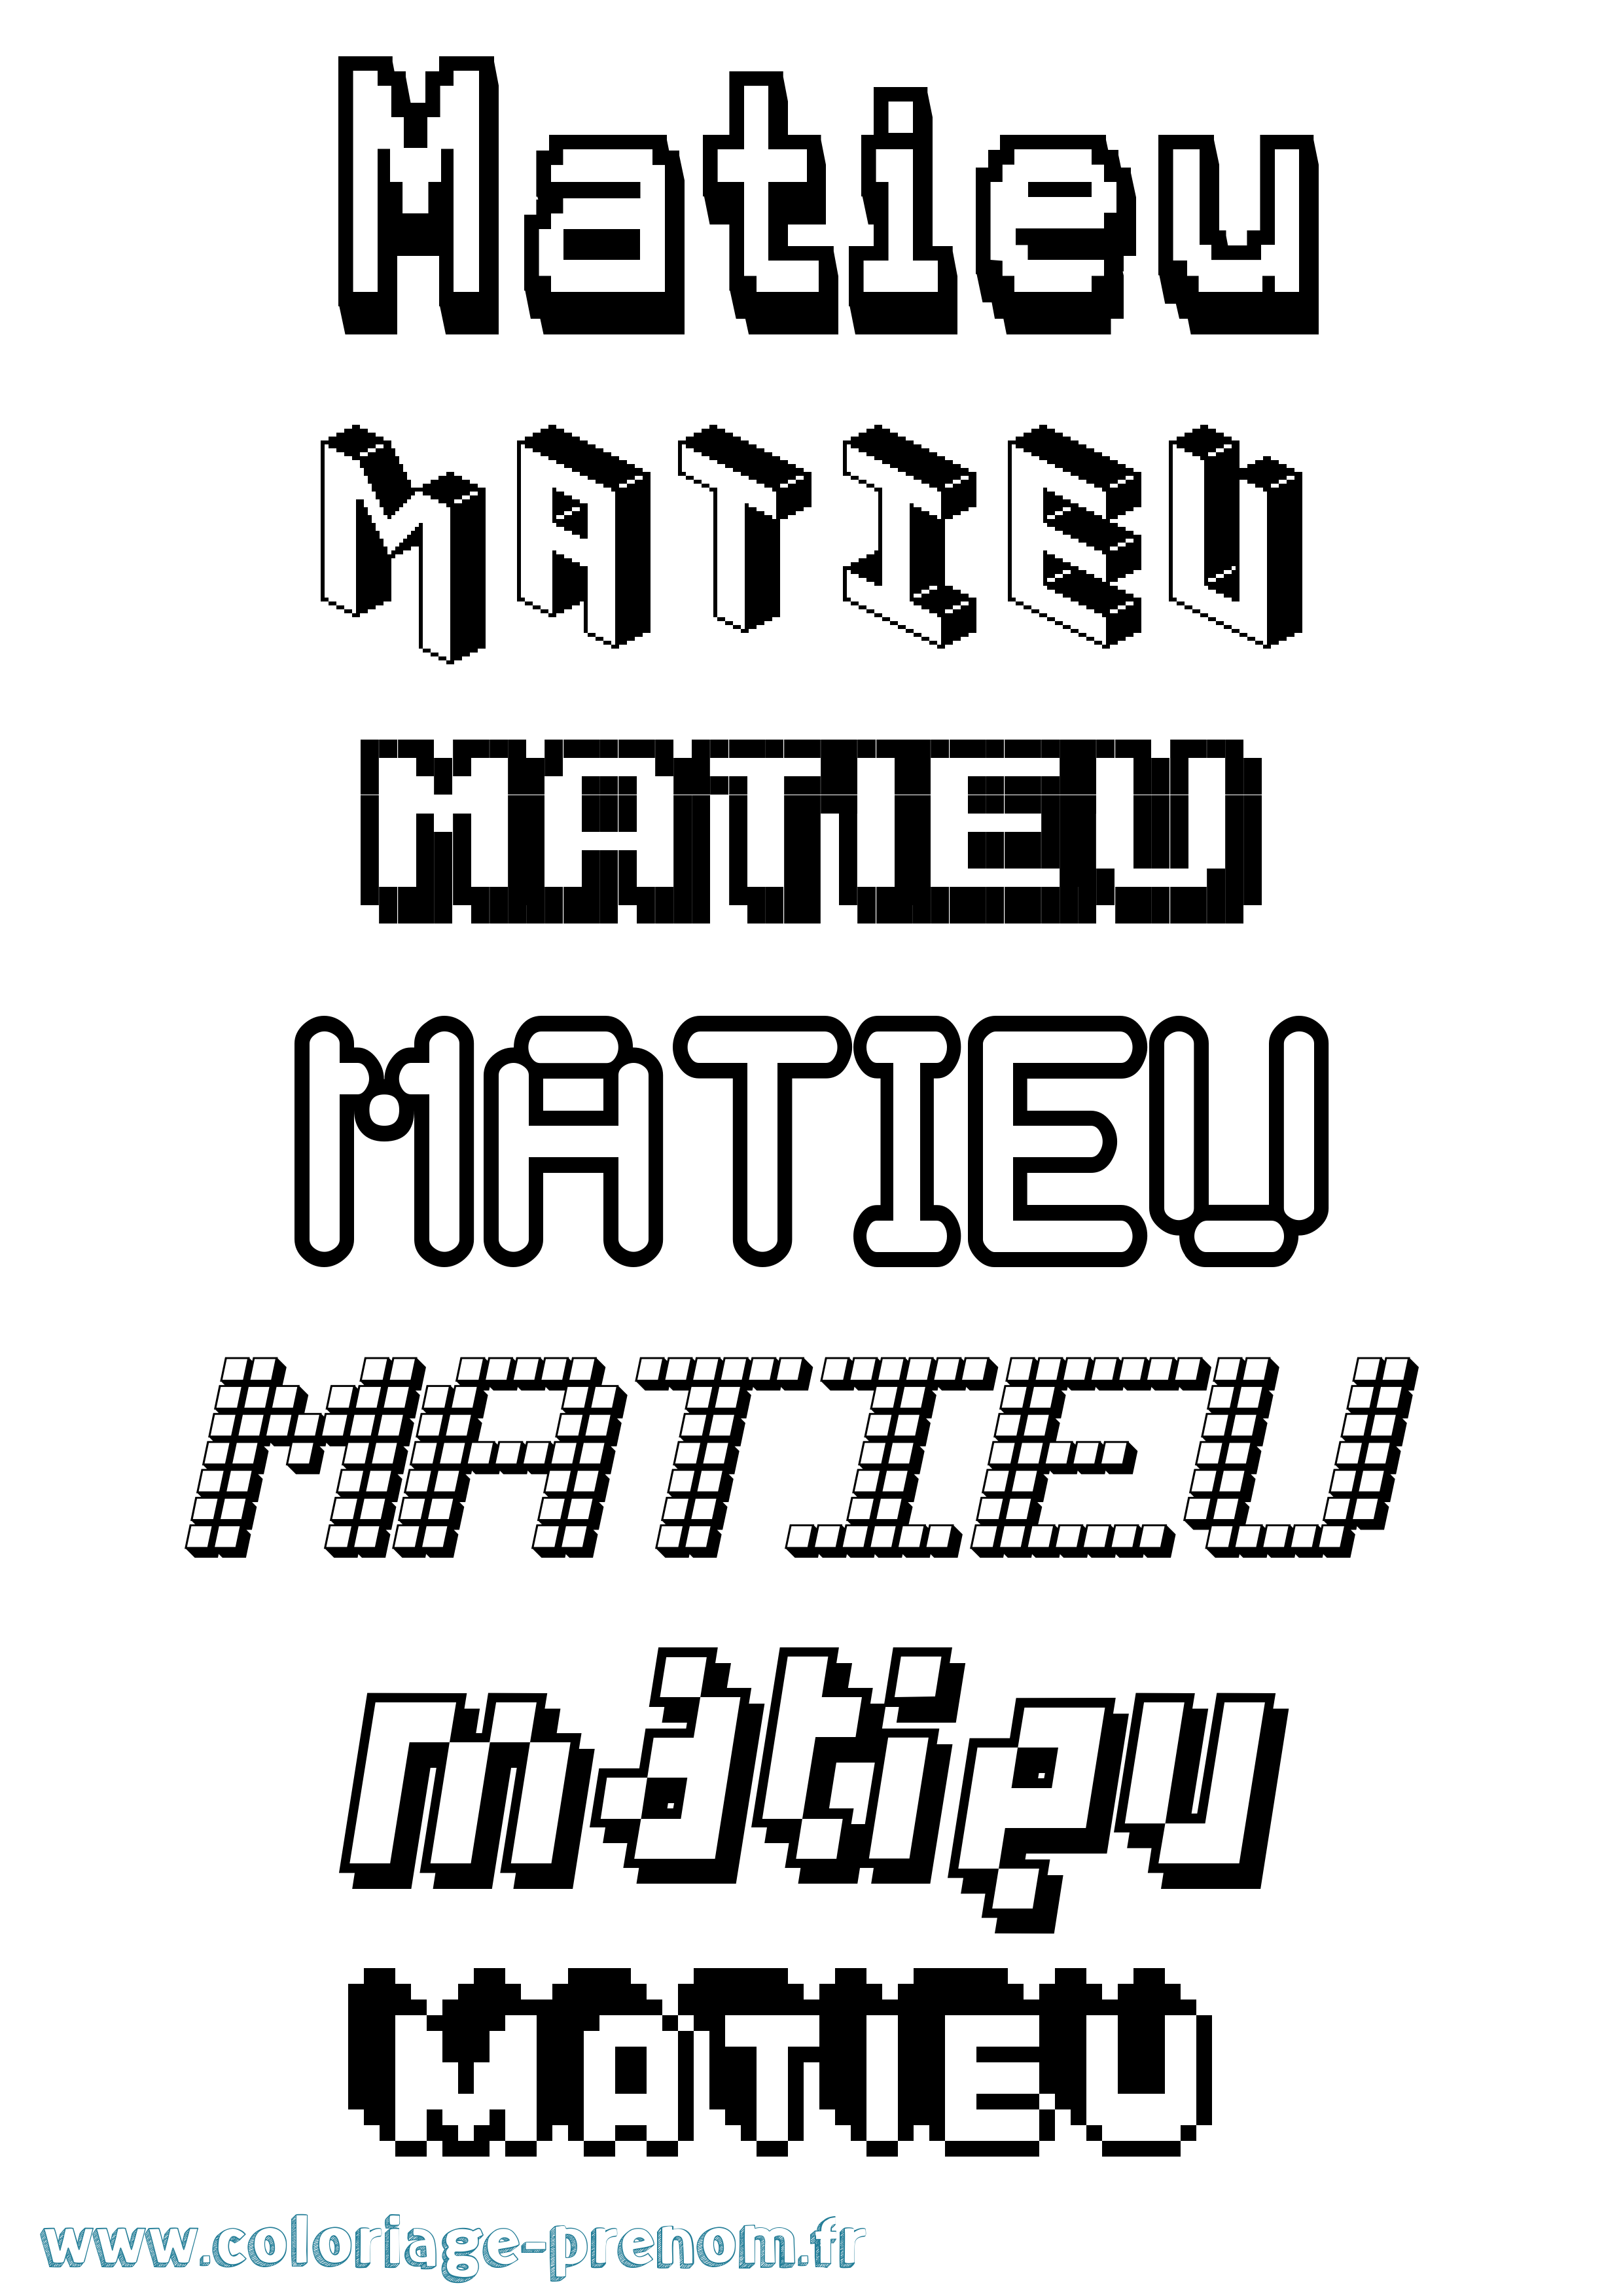 Coloriage prénom Matieu Pixel